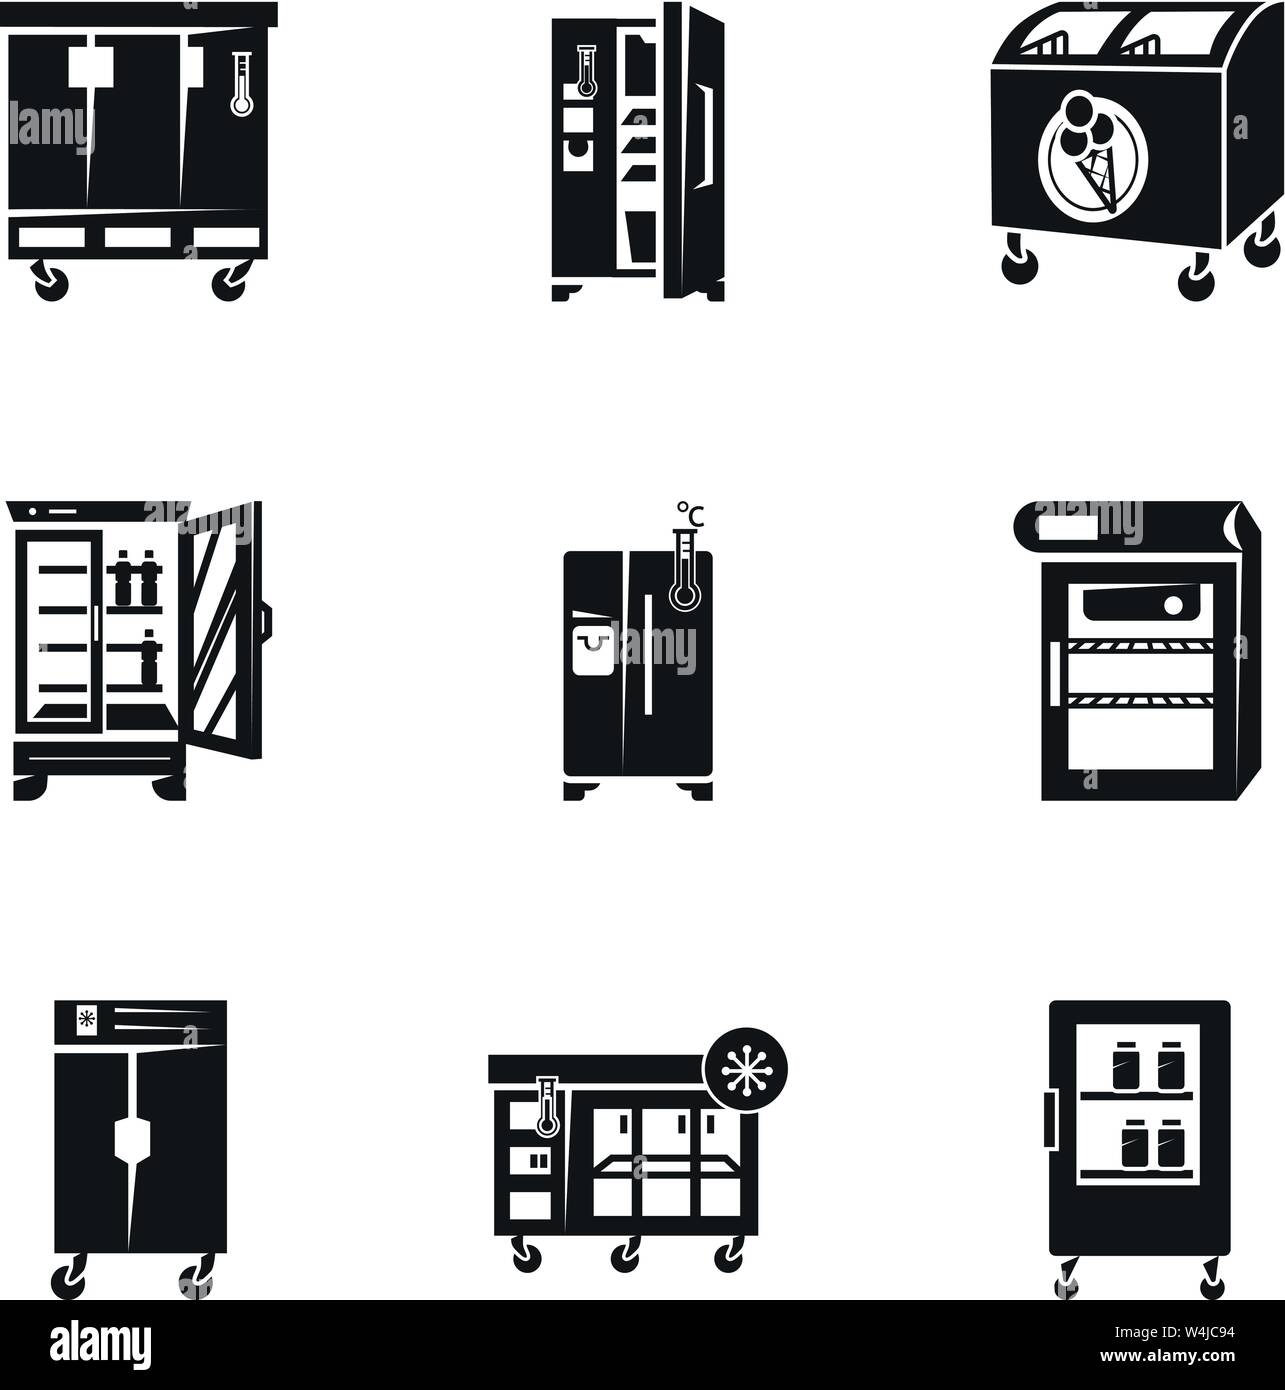 Kühlschrank Icon Set. Einfacher Satz von 9 Kühlschrank Vector Icons für Web  Design auf weißem Hintergrund Stock-Vektorgrafik - Alamy